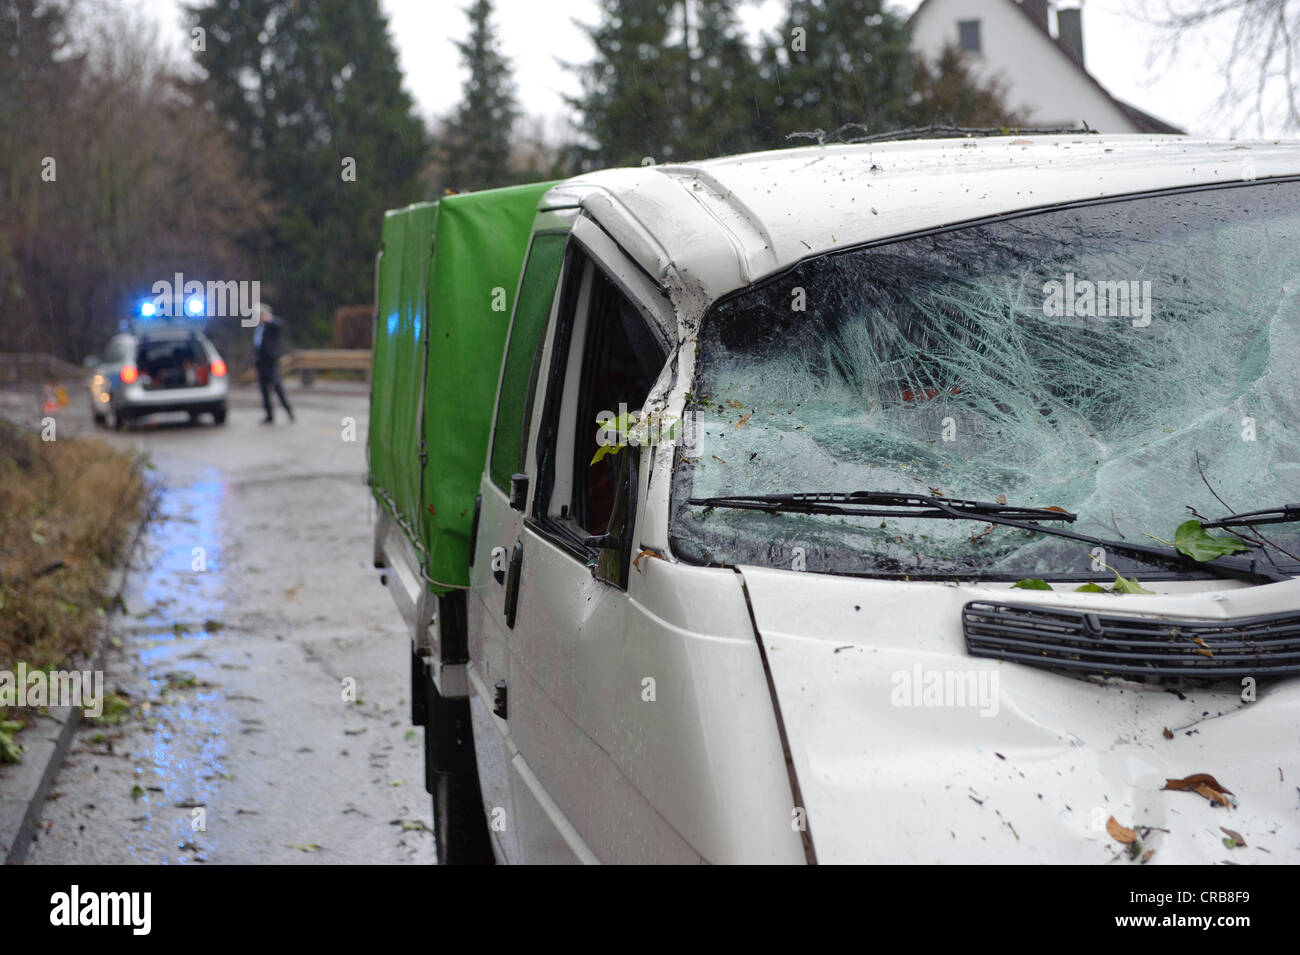 Au cours d'une tempête d'un arbre en décomposition s'est écrasé sur une voiture qui passait et fortement endommagé son front, Hedelfingen, Bade-Wurtemberg Banque D'Images